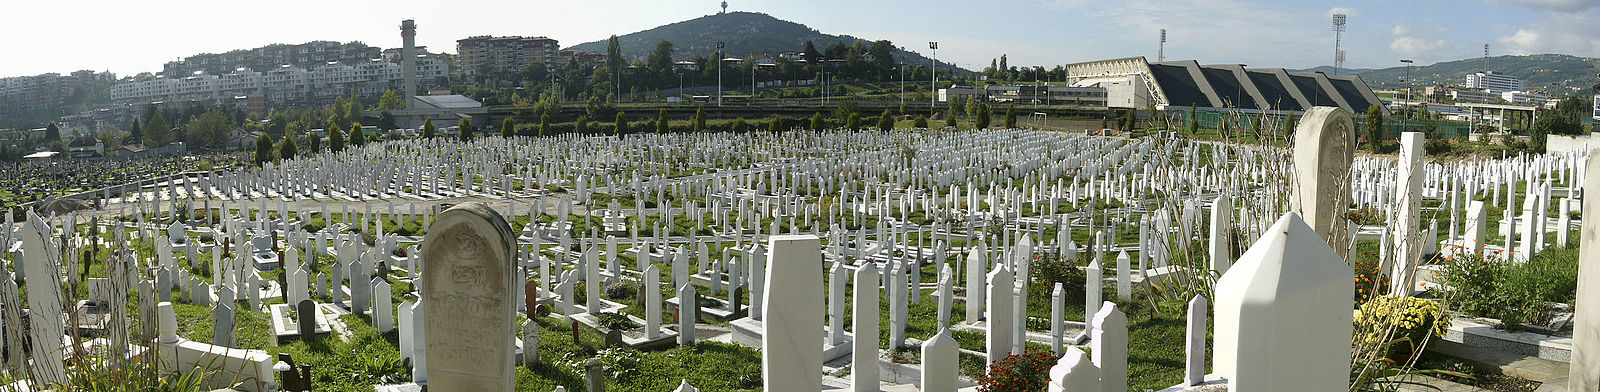 Mezarje Stadion Cemetery, Patriotske lige, Sarajevo.